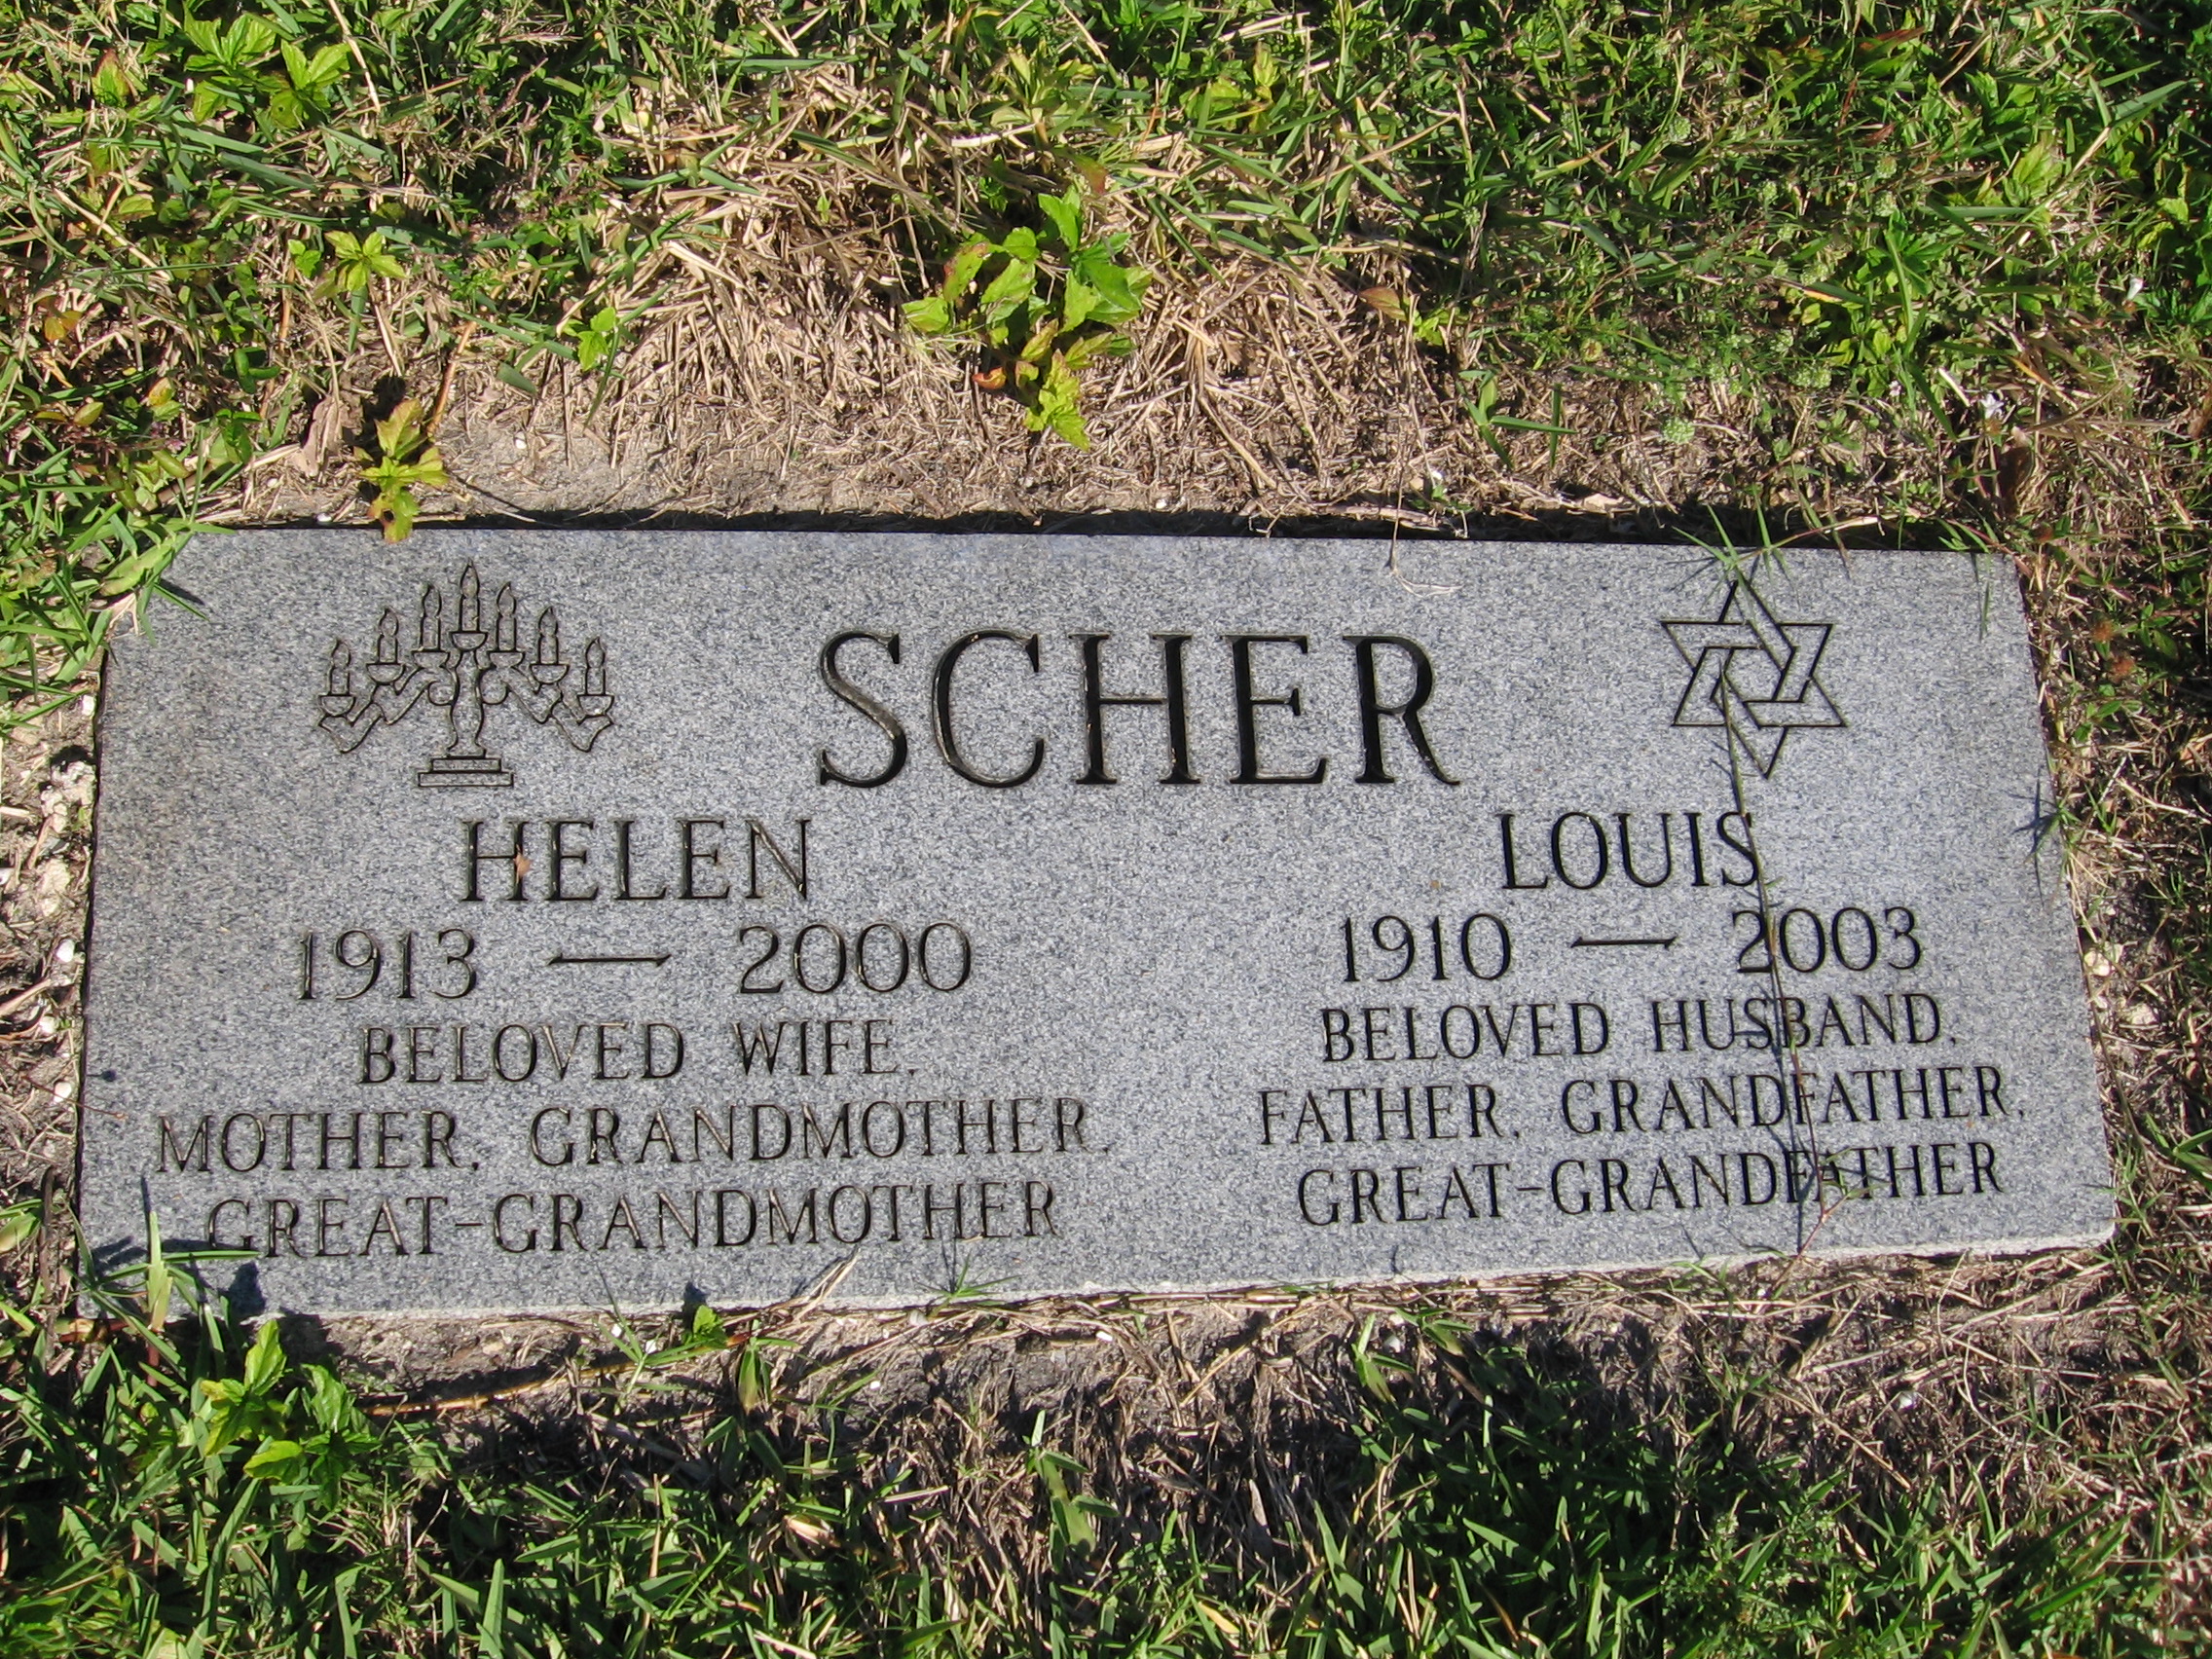 Helen Scher